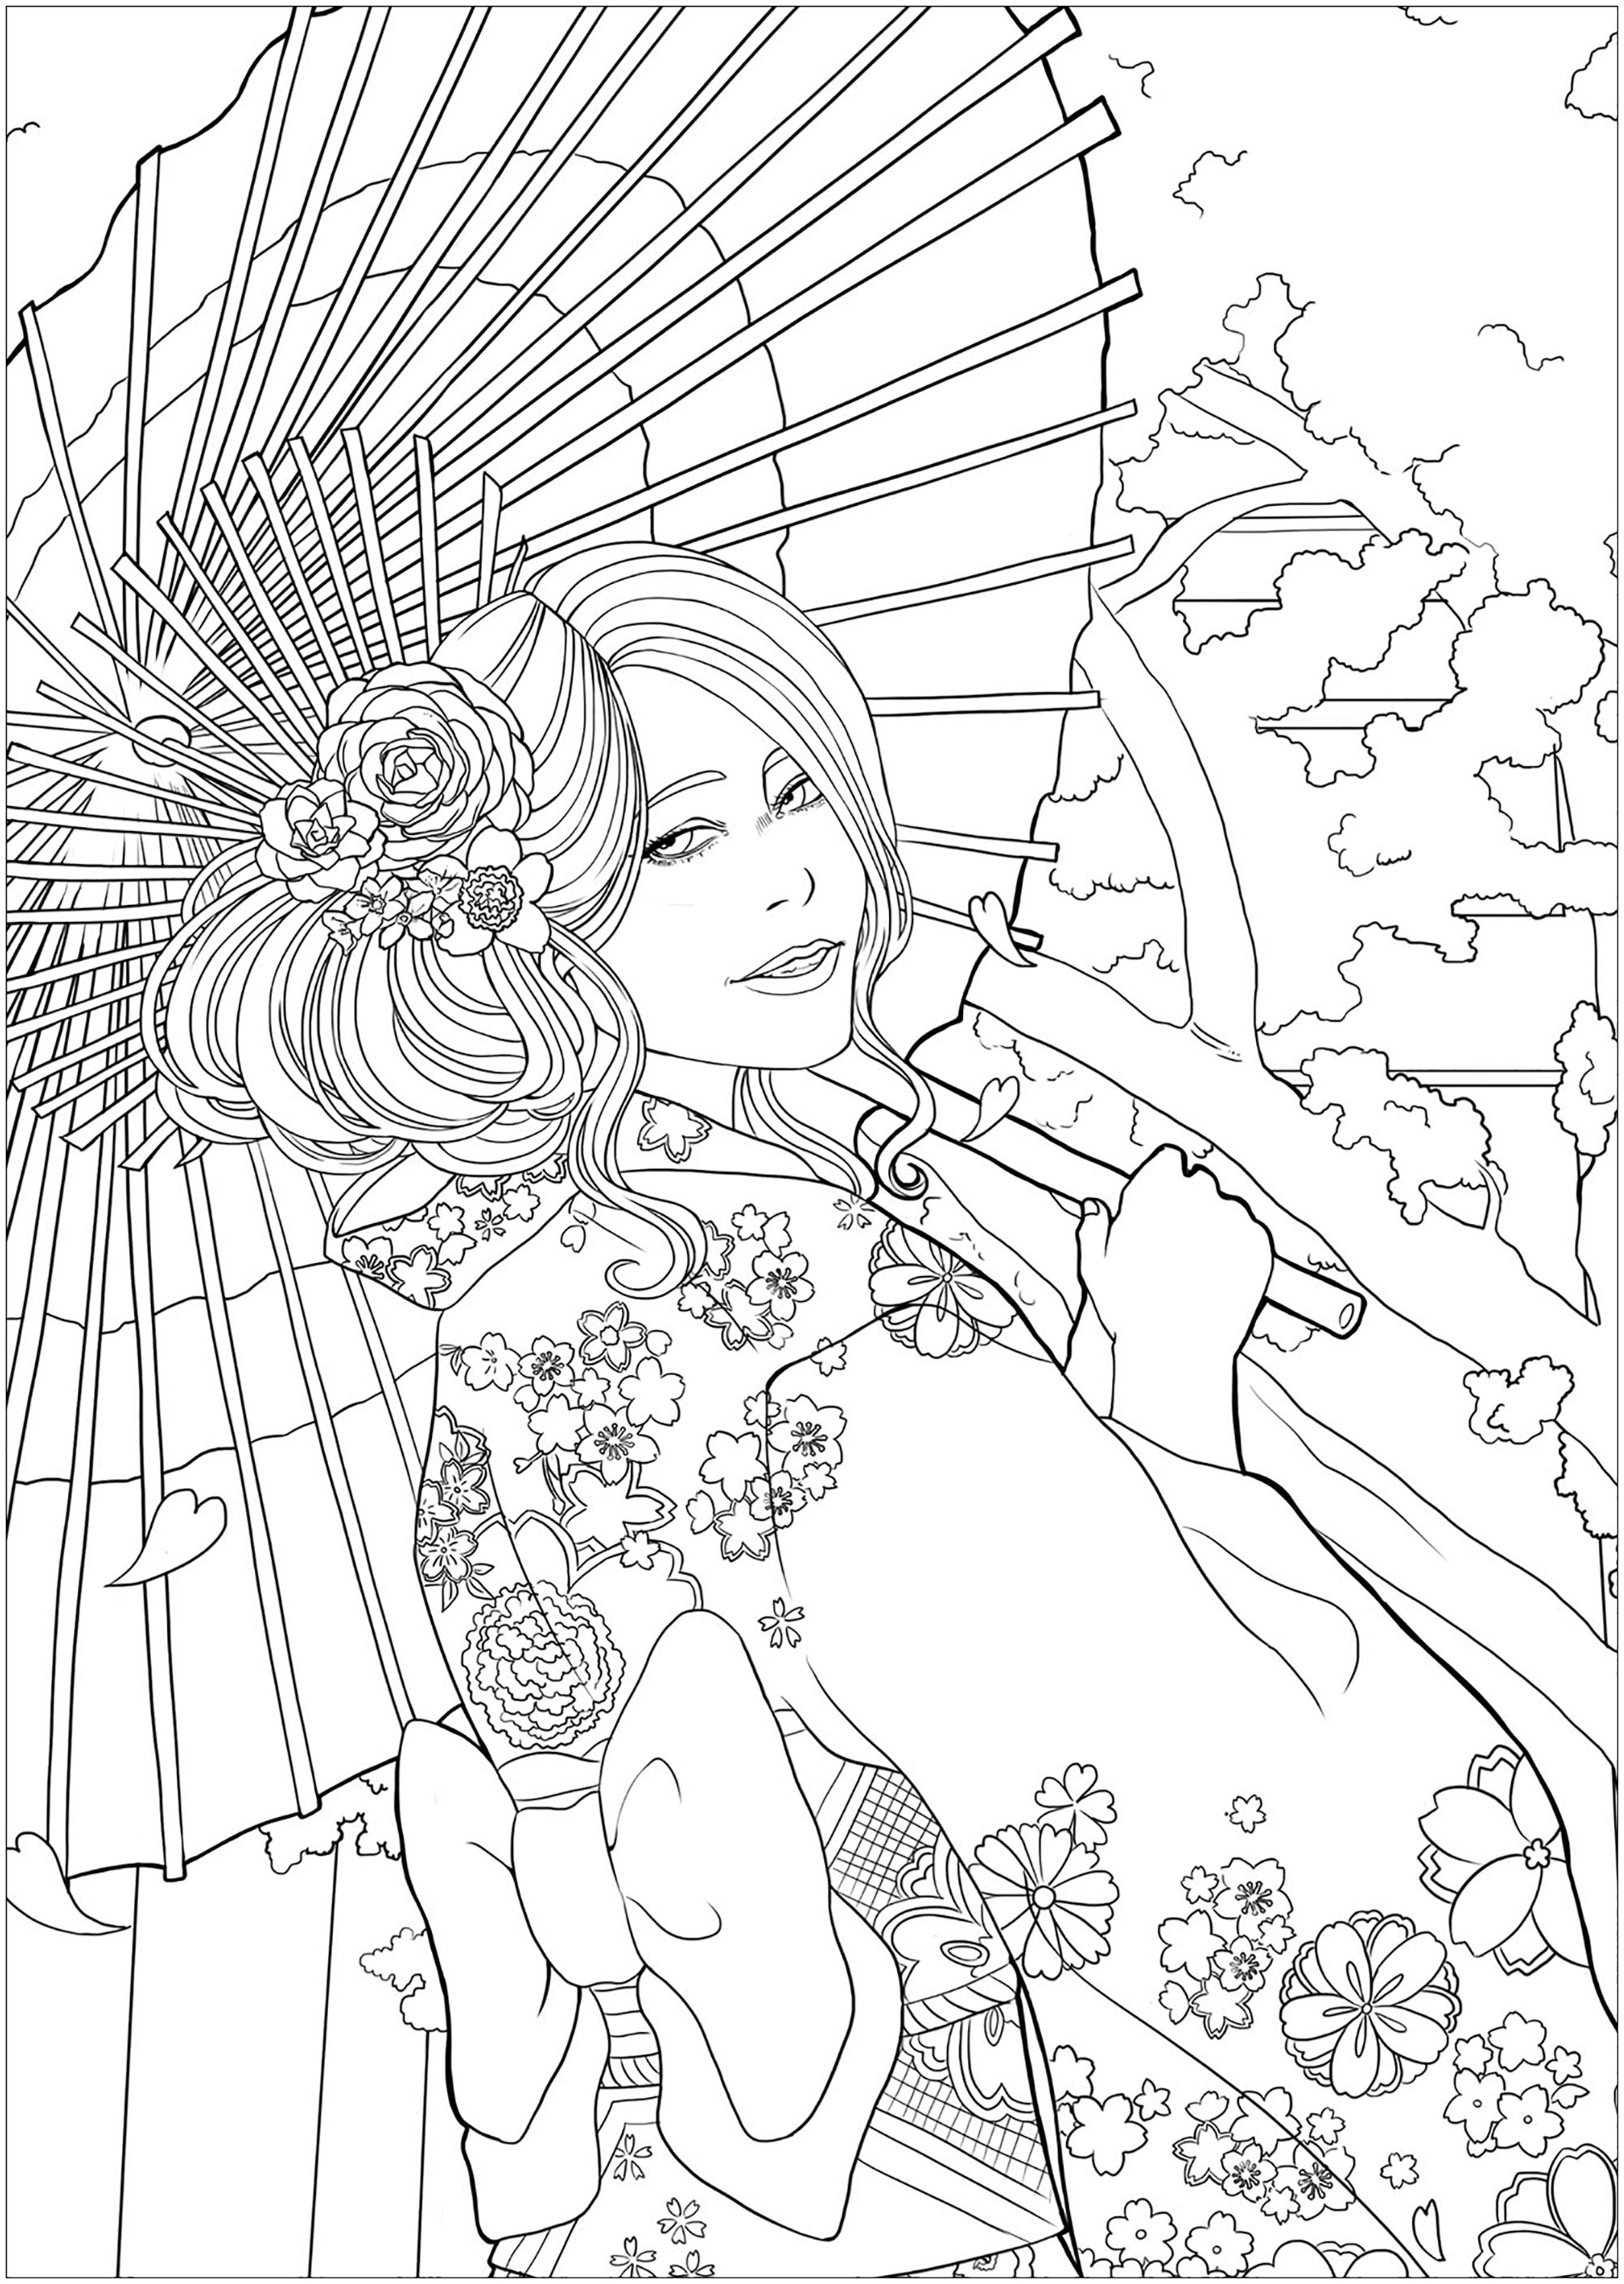 Giovane donna elegante davanti a un tempio e ai fiori di ciliegio, con il suo yukata più bello. Versione facile 2, Artista : Lestat Hallward Holmes